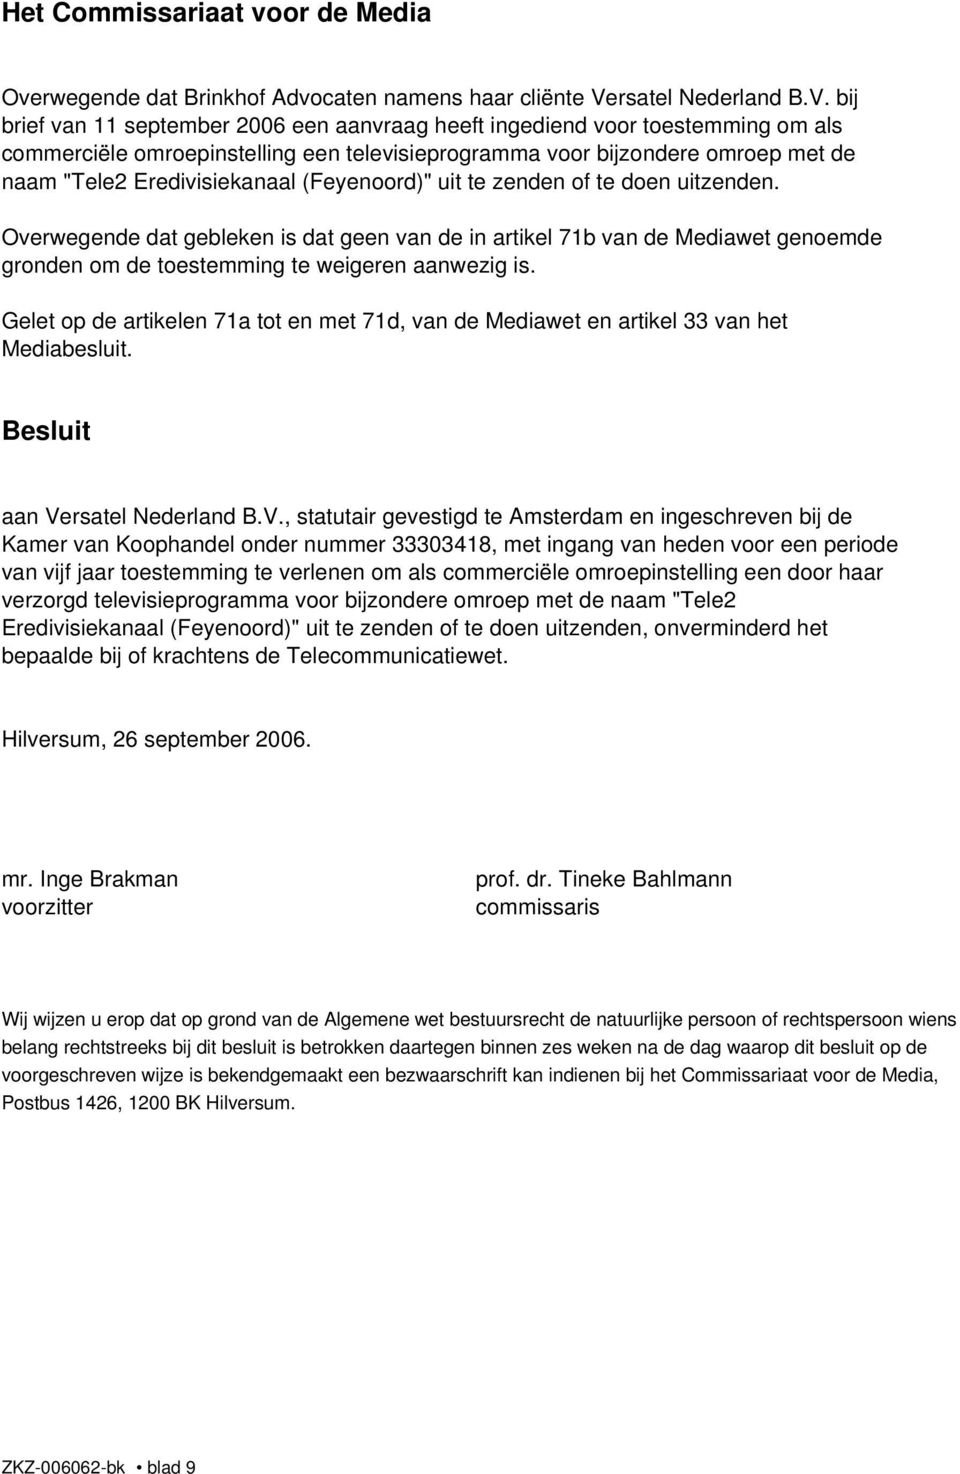 Eredivisiekanaal (Feyenoord)" uit te zenden